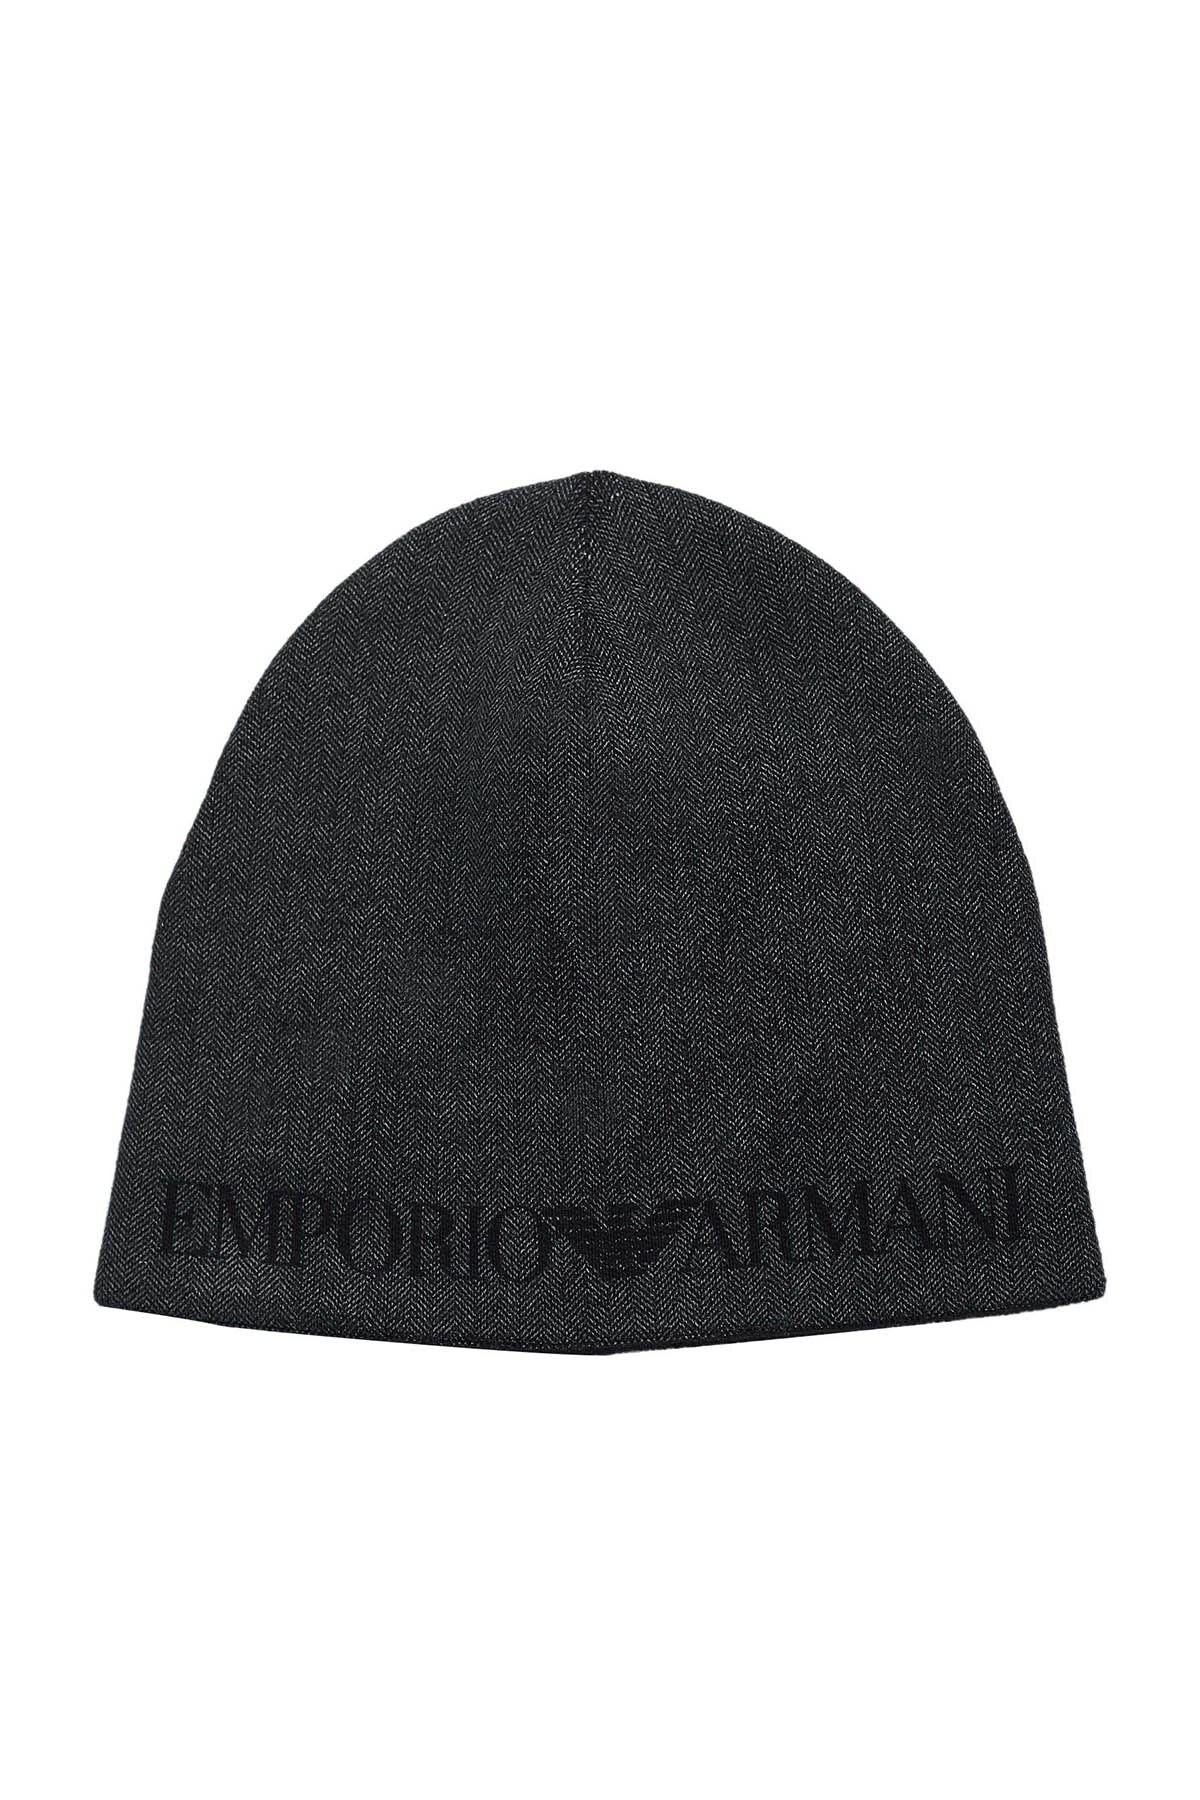 Emporio Armani Logo Baskılı Yünlü Erkek Bere 627013 0A513 00044 ANTRASİT